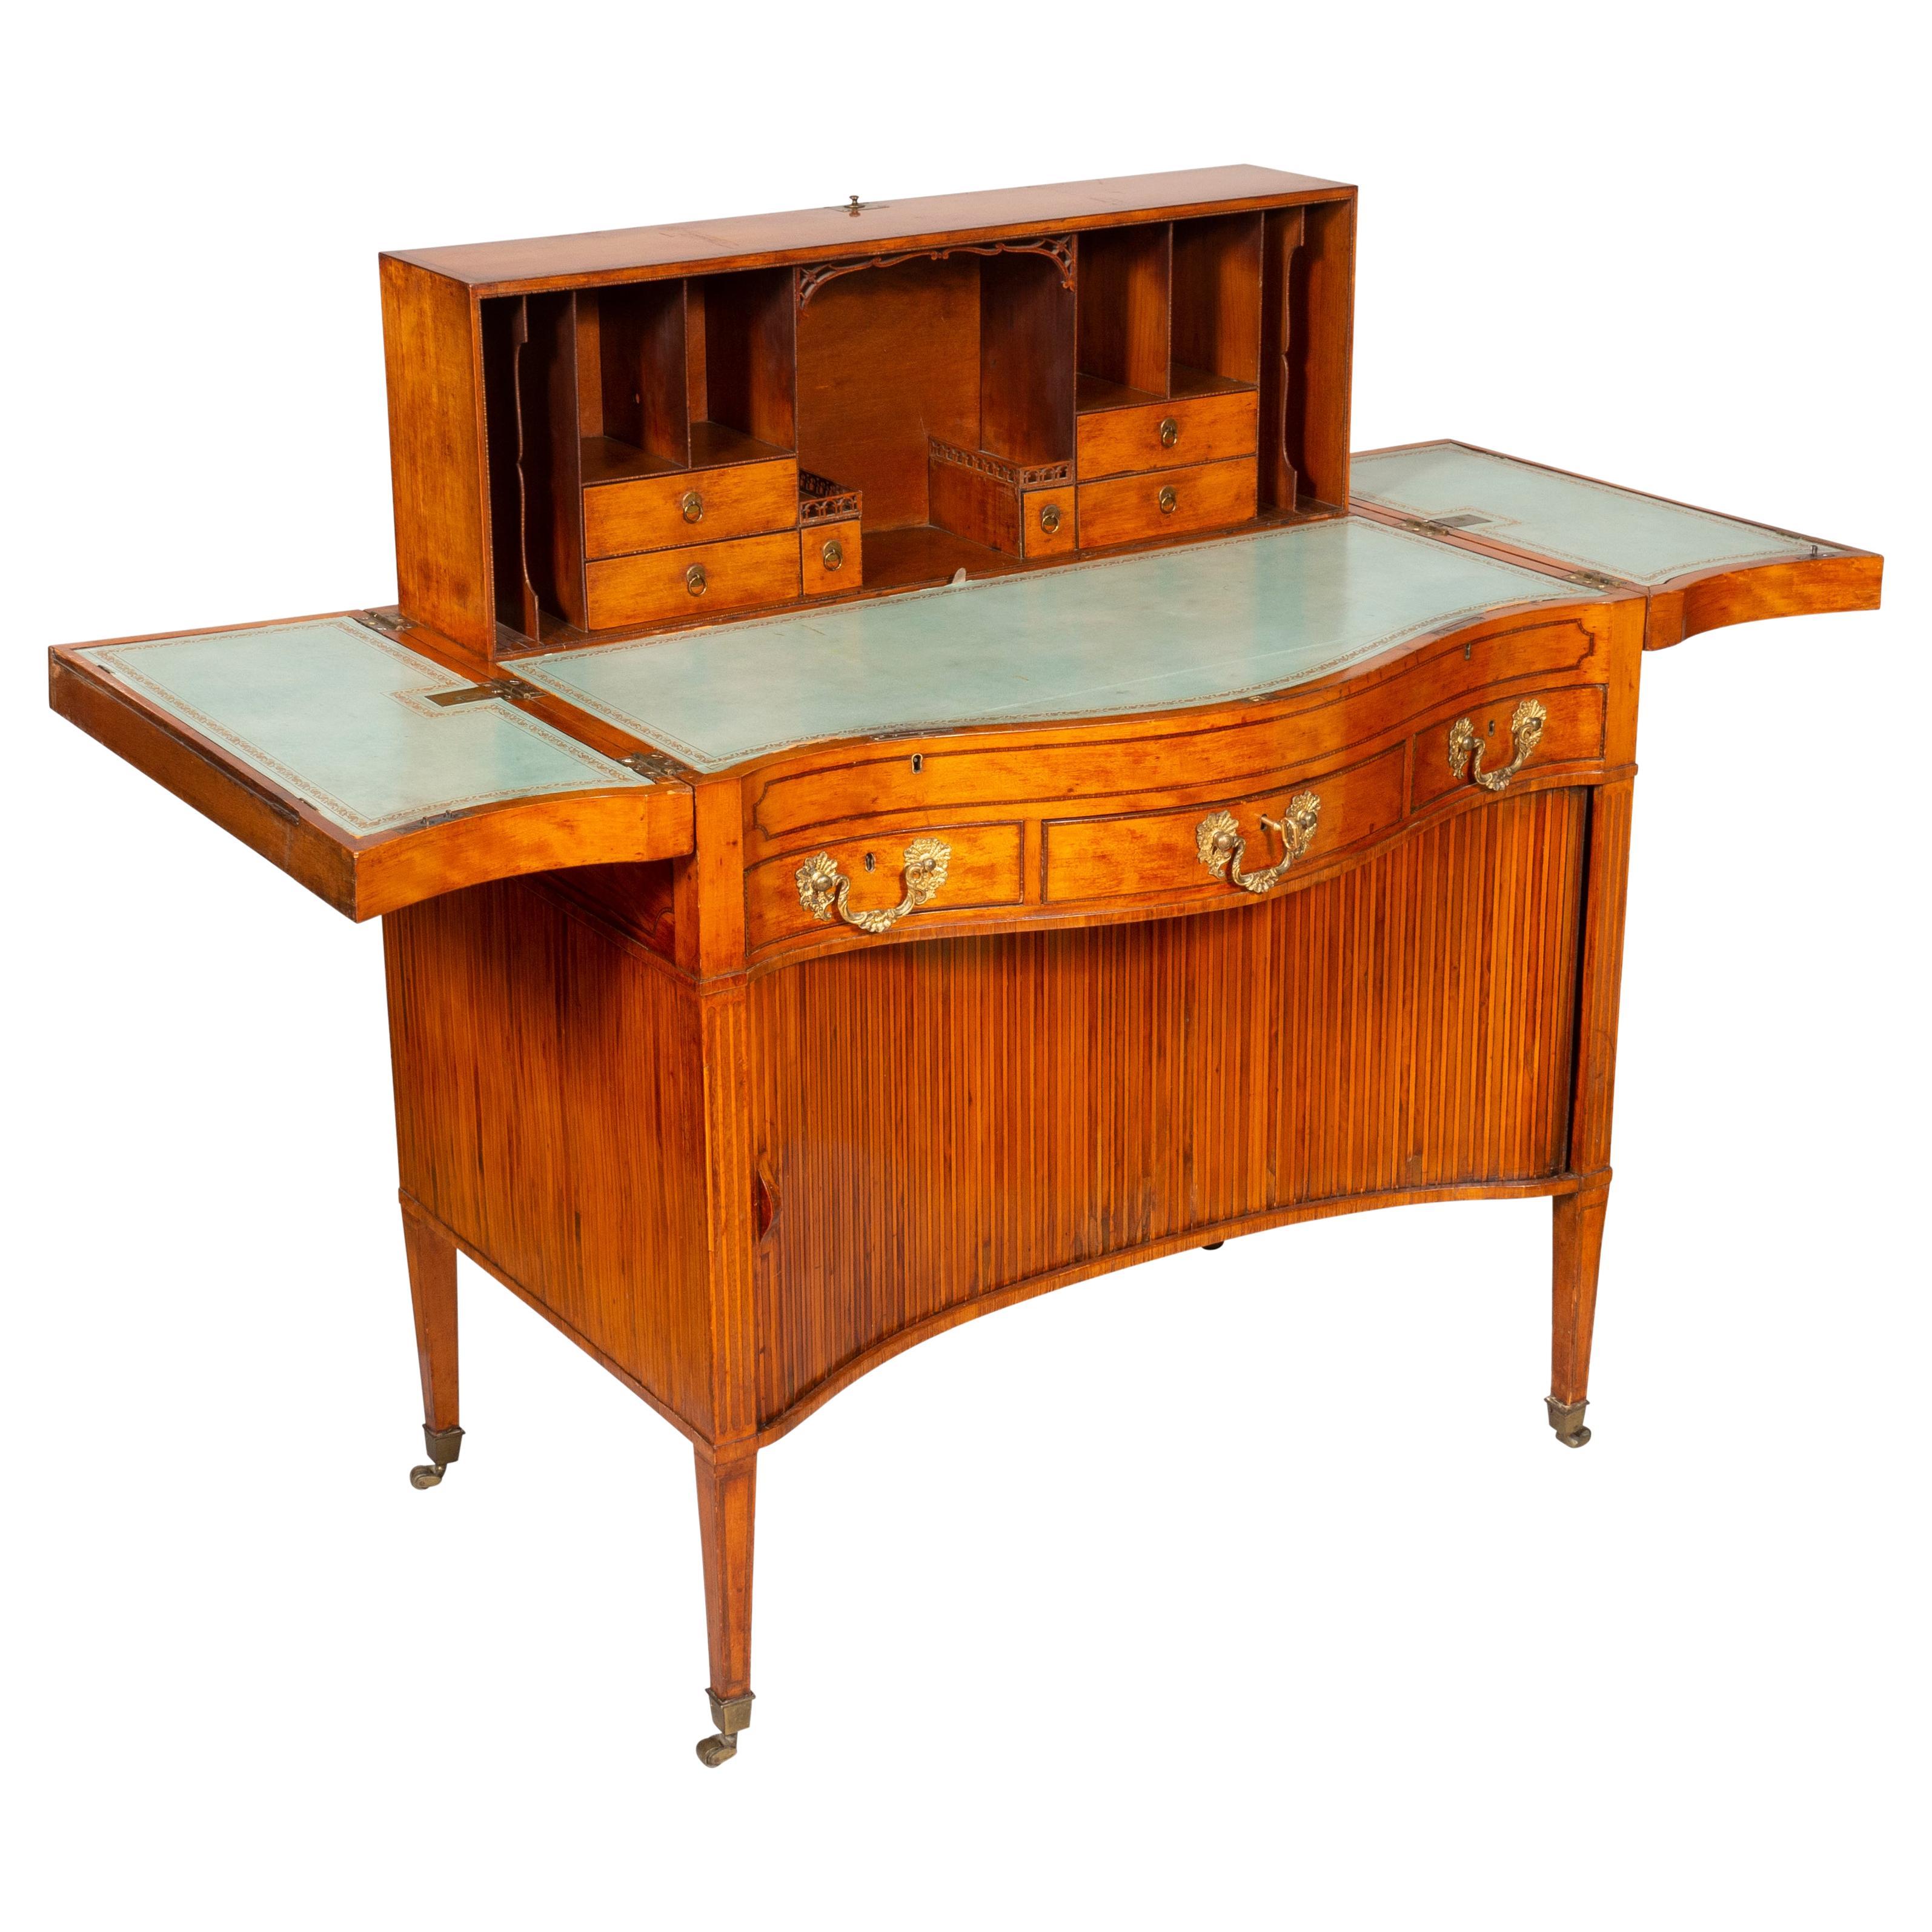 Harlekin-Schreibtisch aus Satinholz und Intarsien von George III